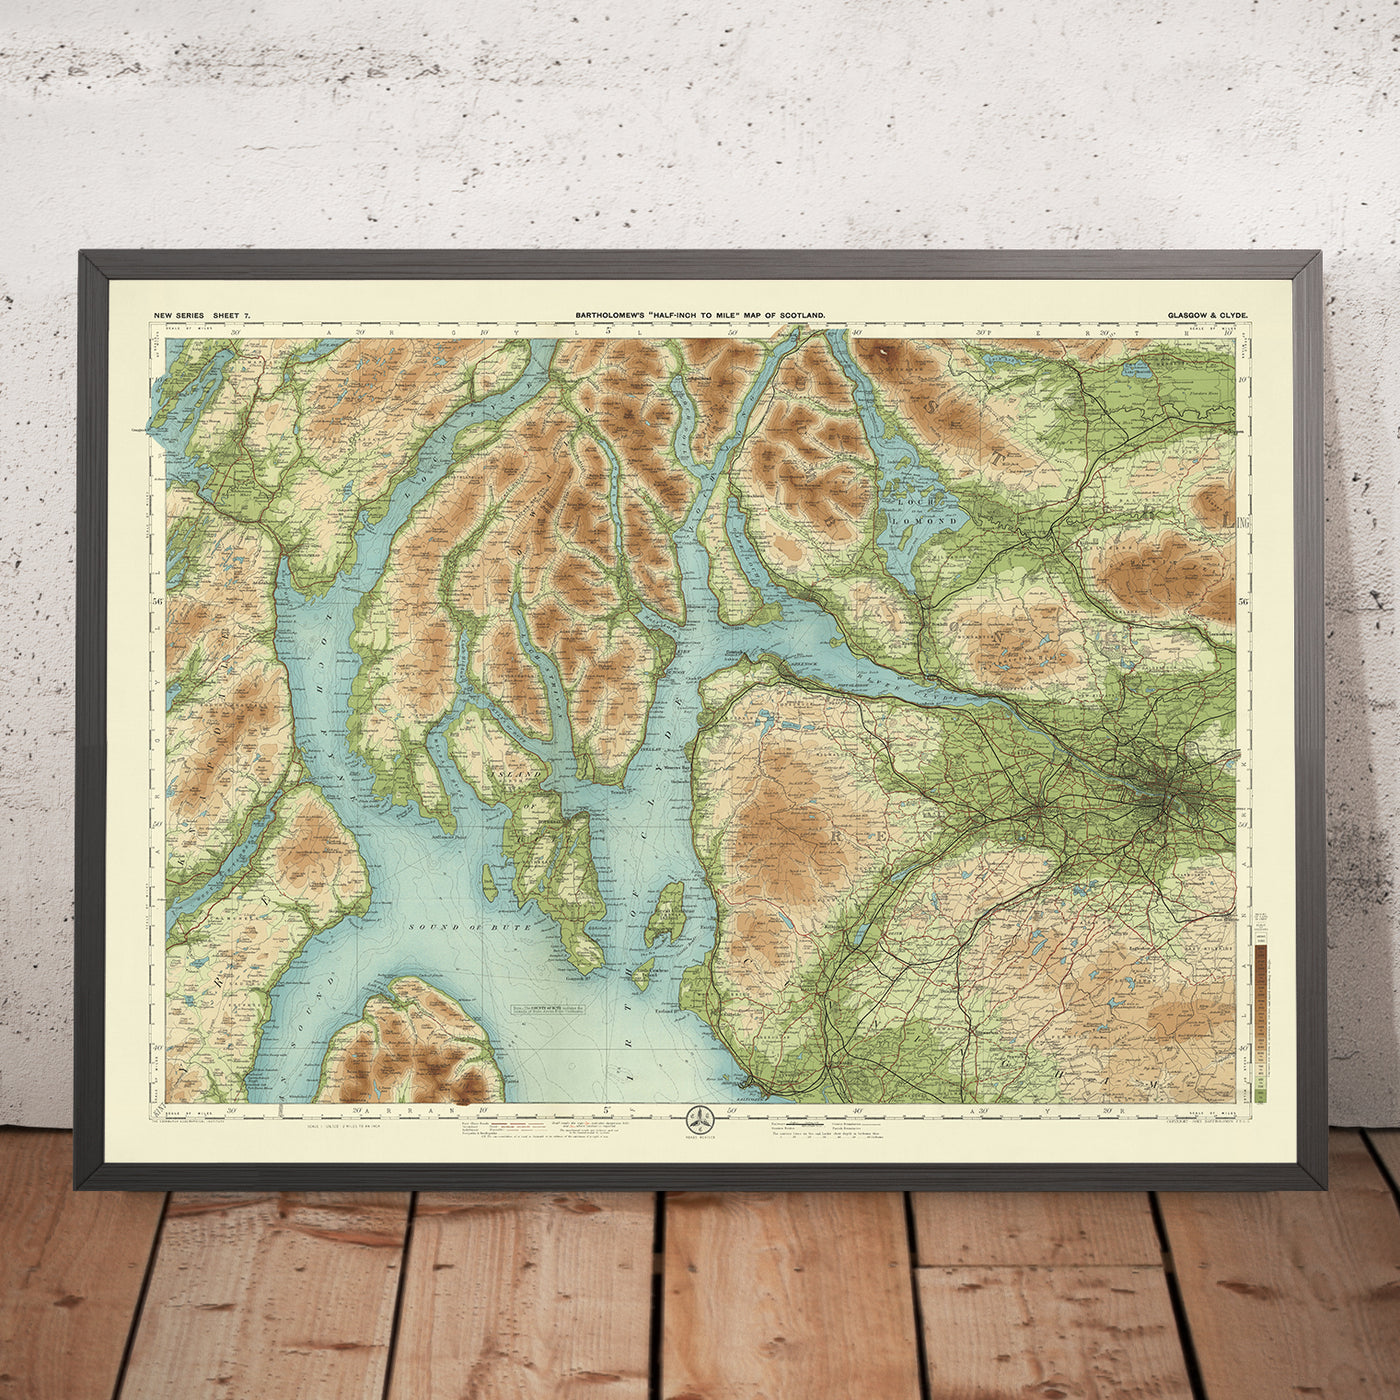 Alte OS-Karte von Glasgow, Lanarkshire von Bartholomew, 1901: Loch Lomond, Firth of Clyde, Arrochar Alps, Trossachs, Dumbarton Castle, Eisenbahnen